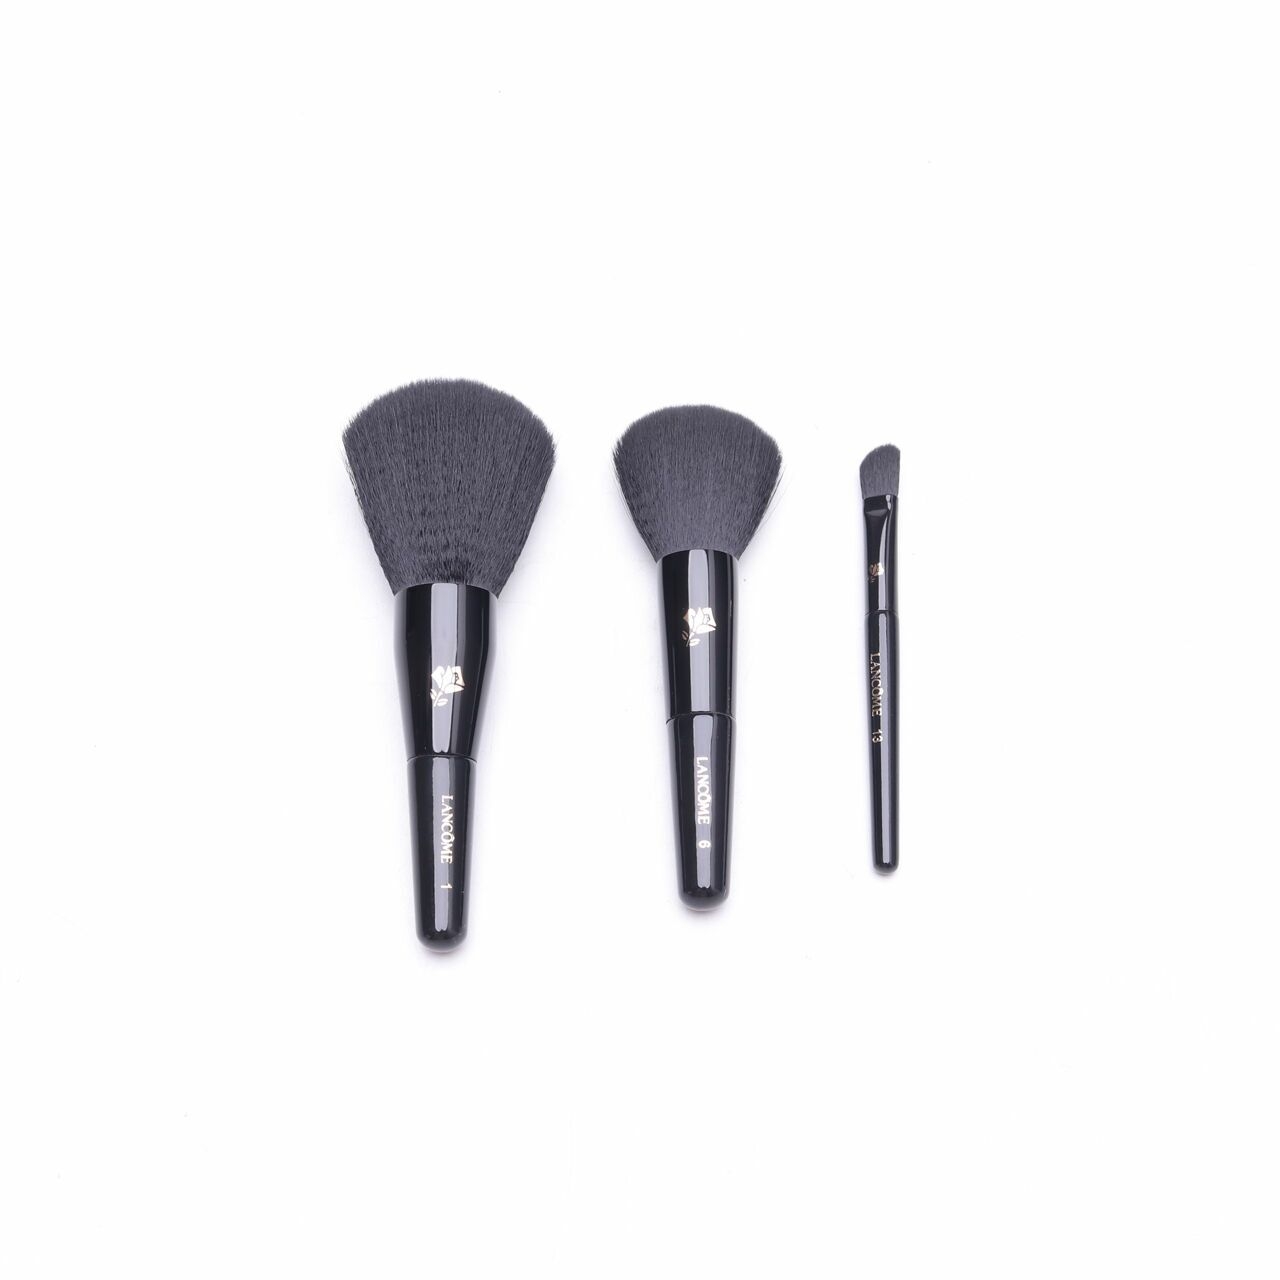 Lancome Black Mini Brush Set Tools